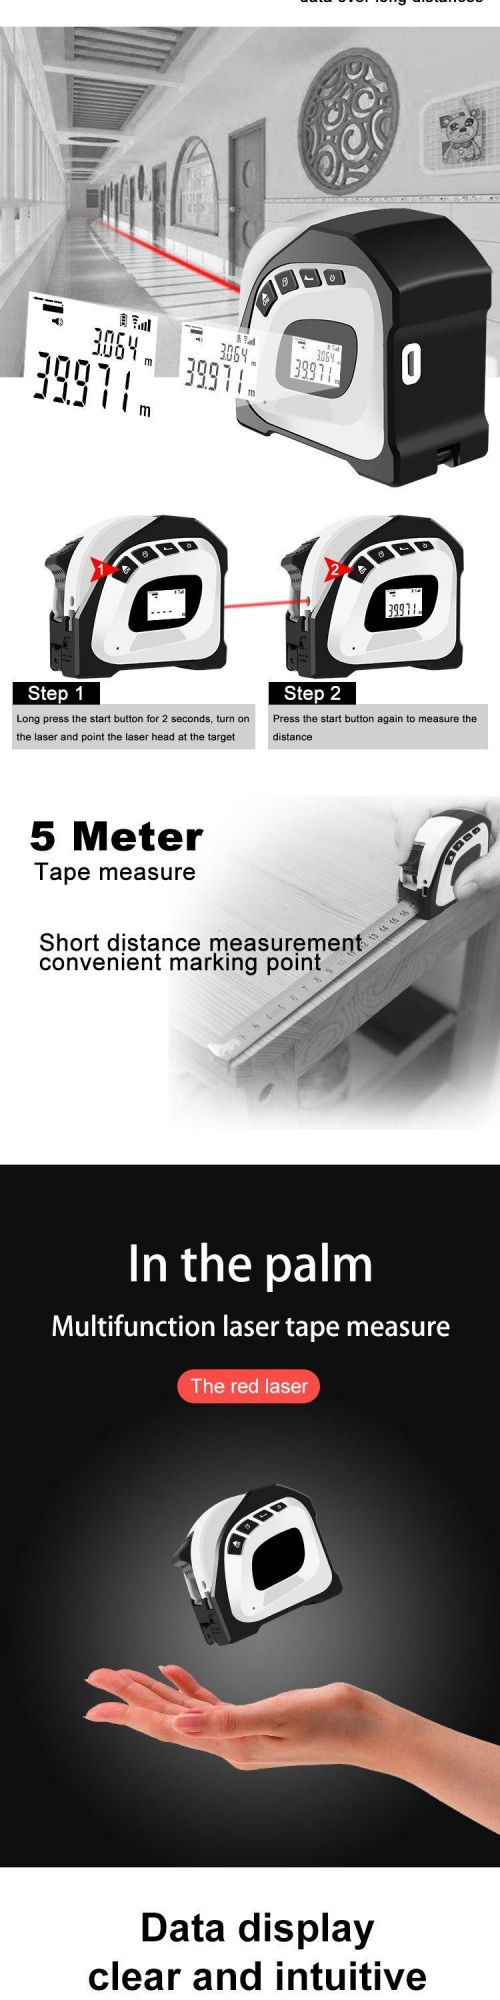 40m Electronic Digital Laser Measurer Tape Smart